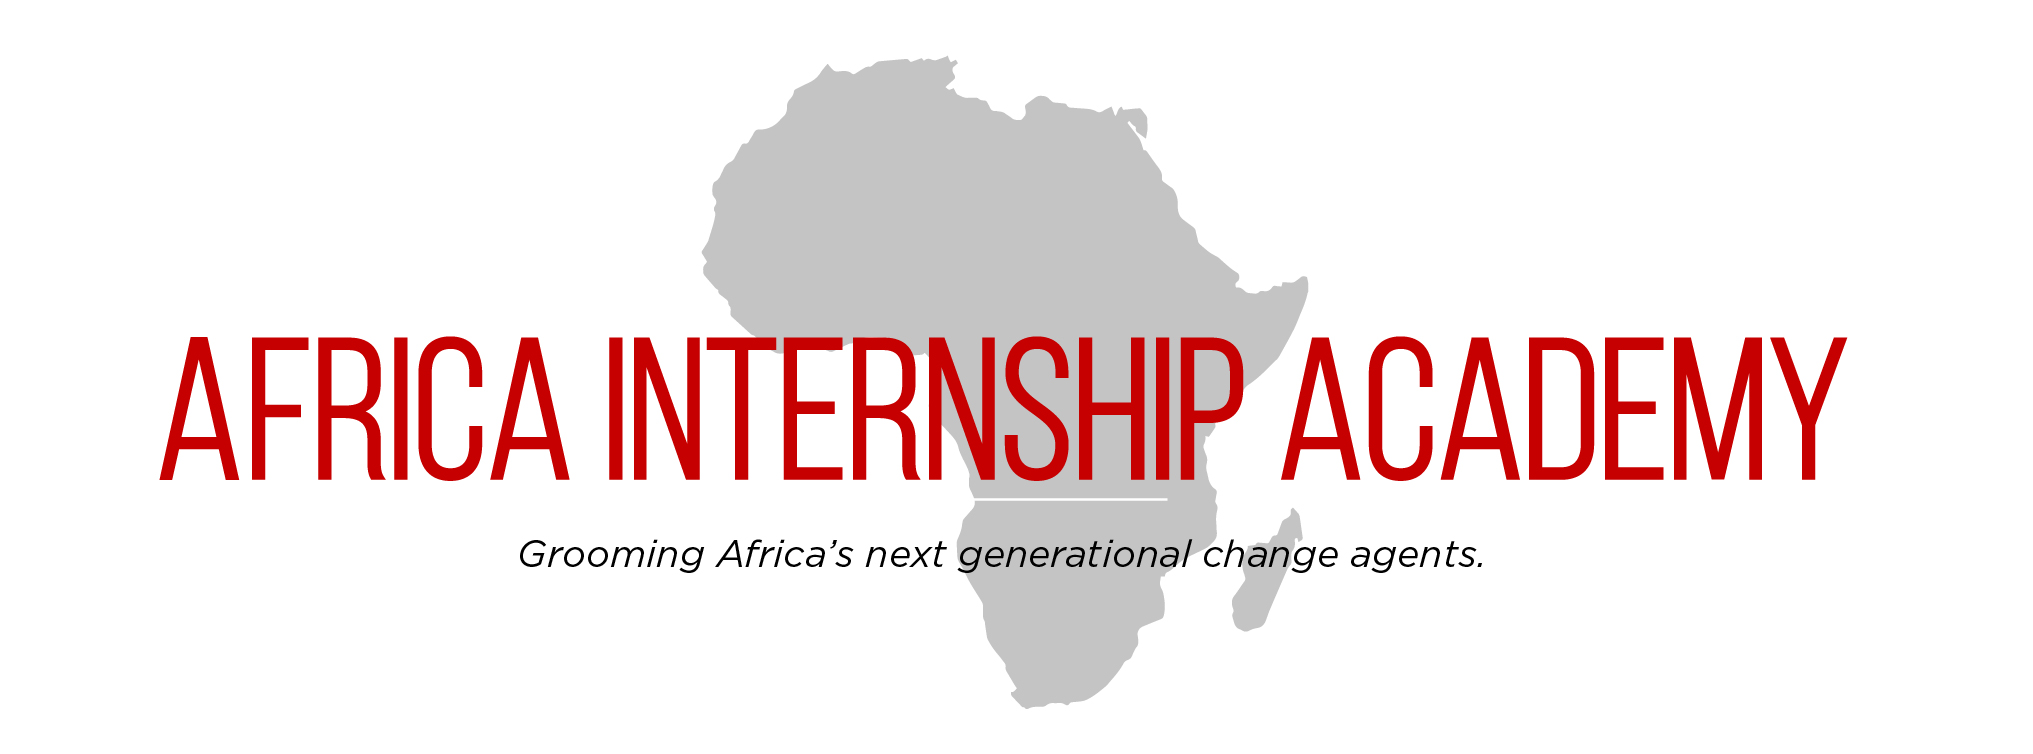 africa internship academy